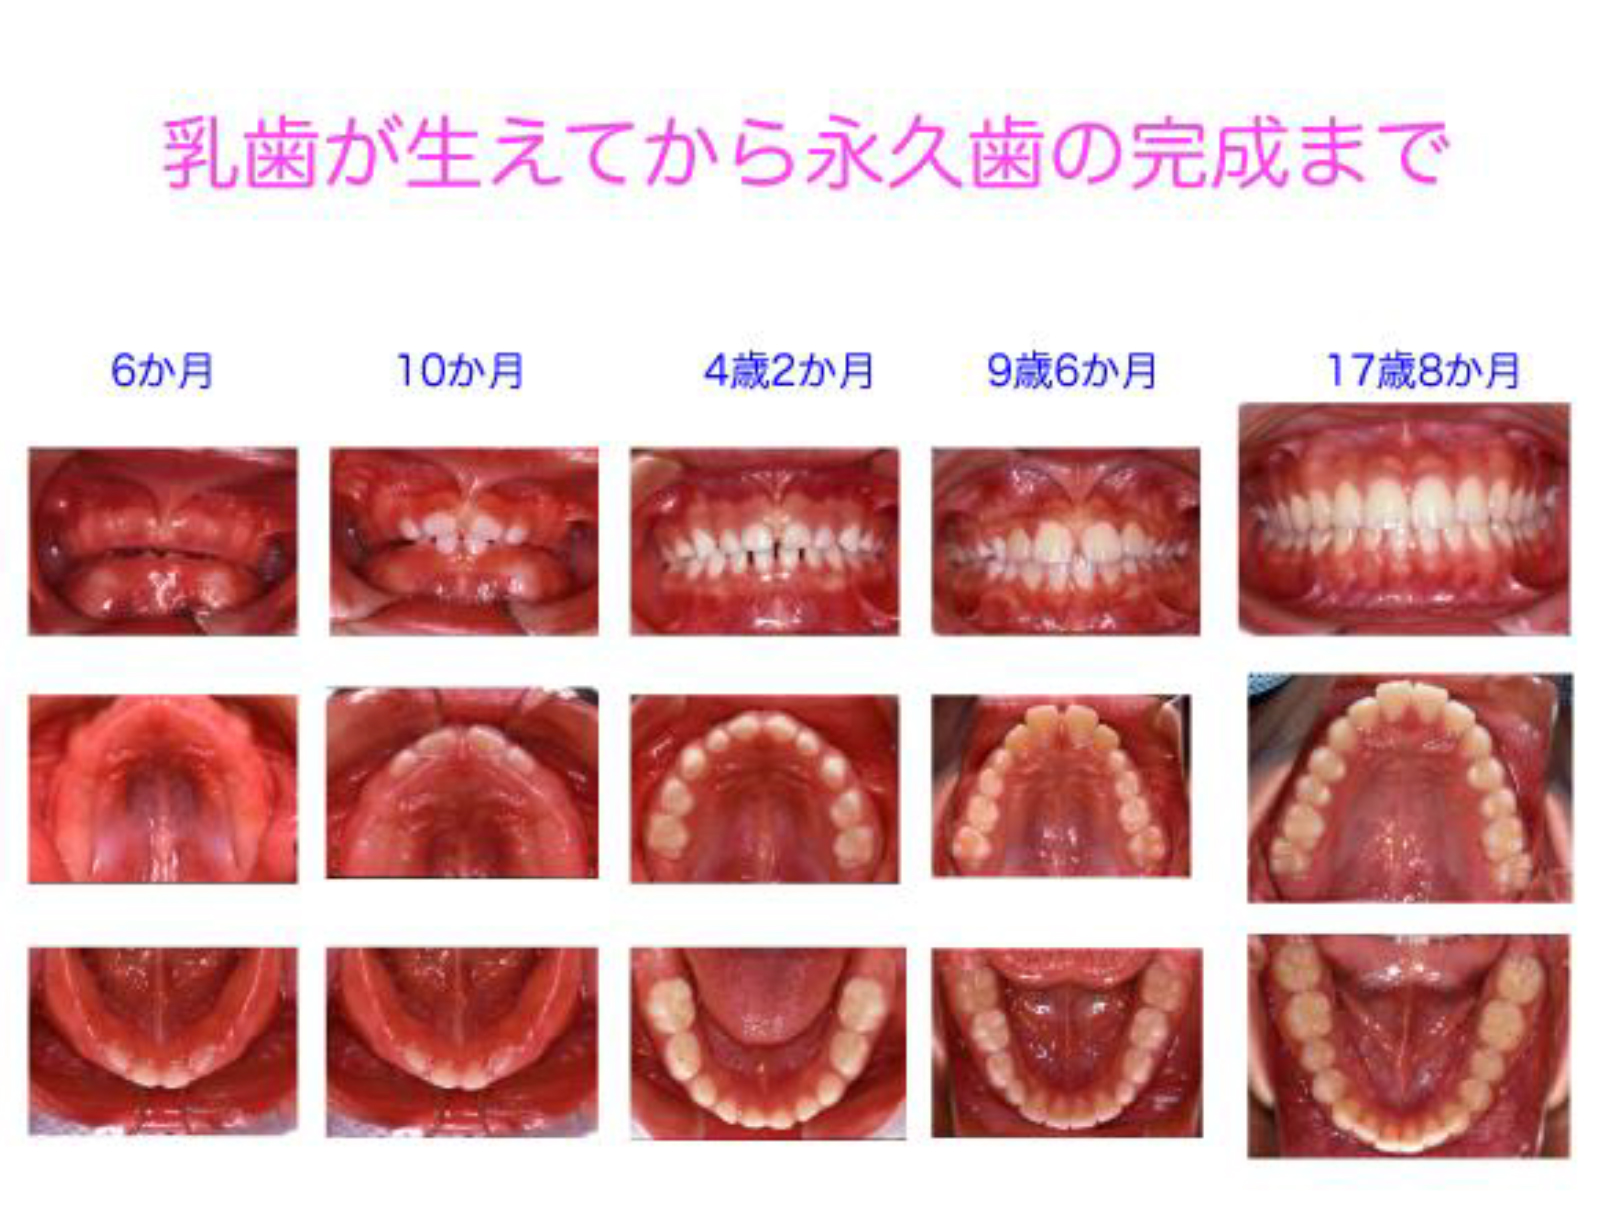 図9 乳歯が生えてから永久歯への交換、正常な永久歯列の完成